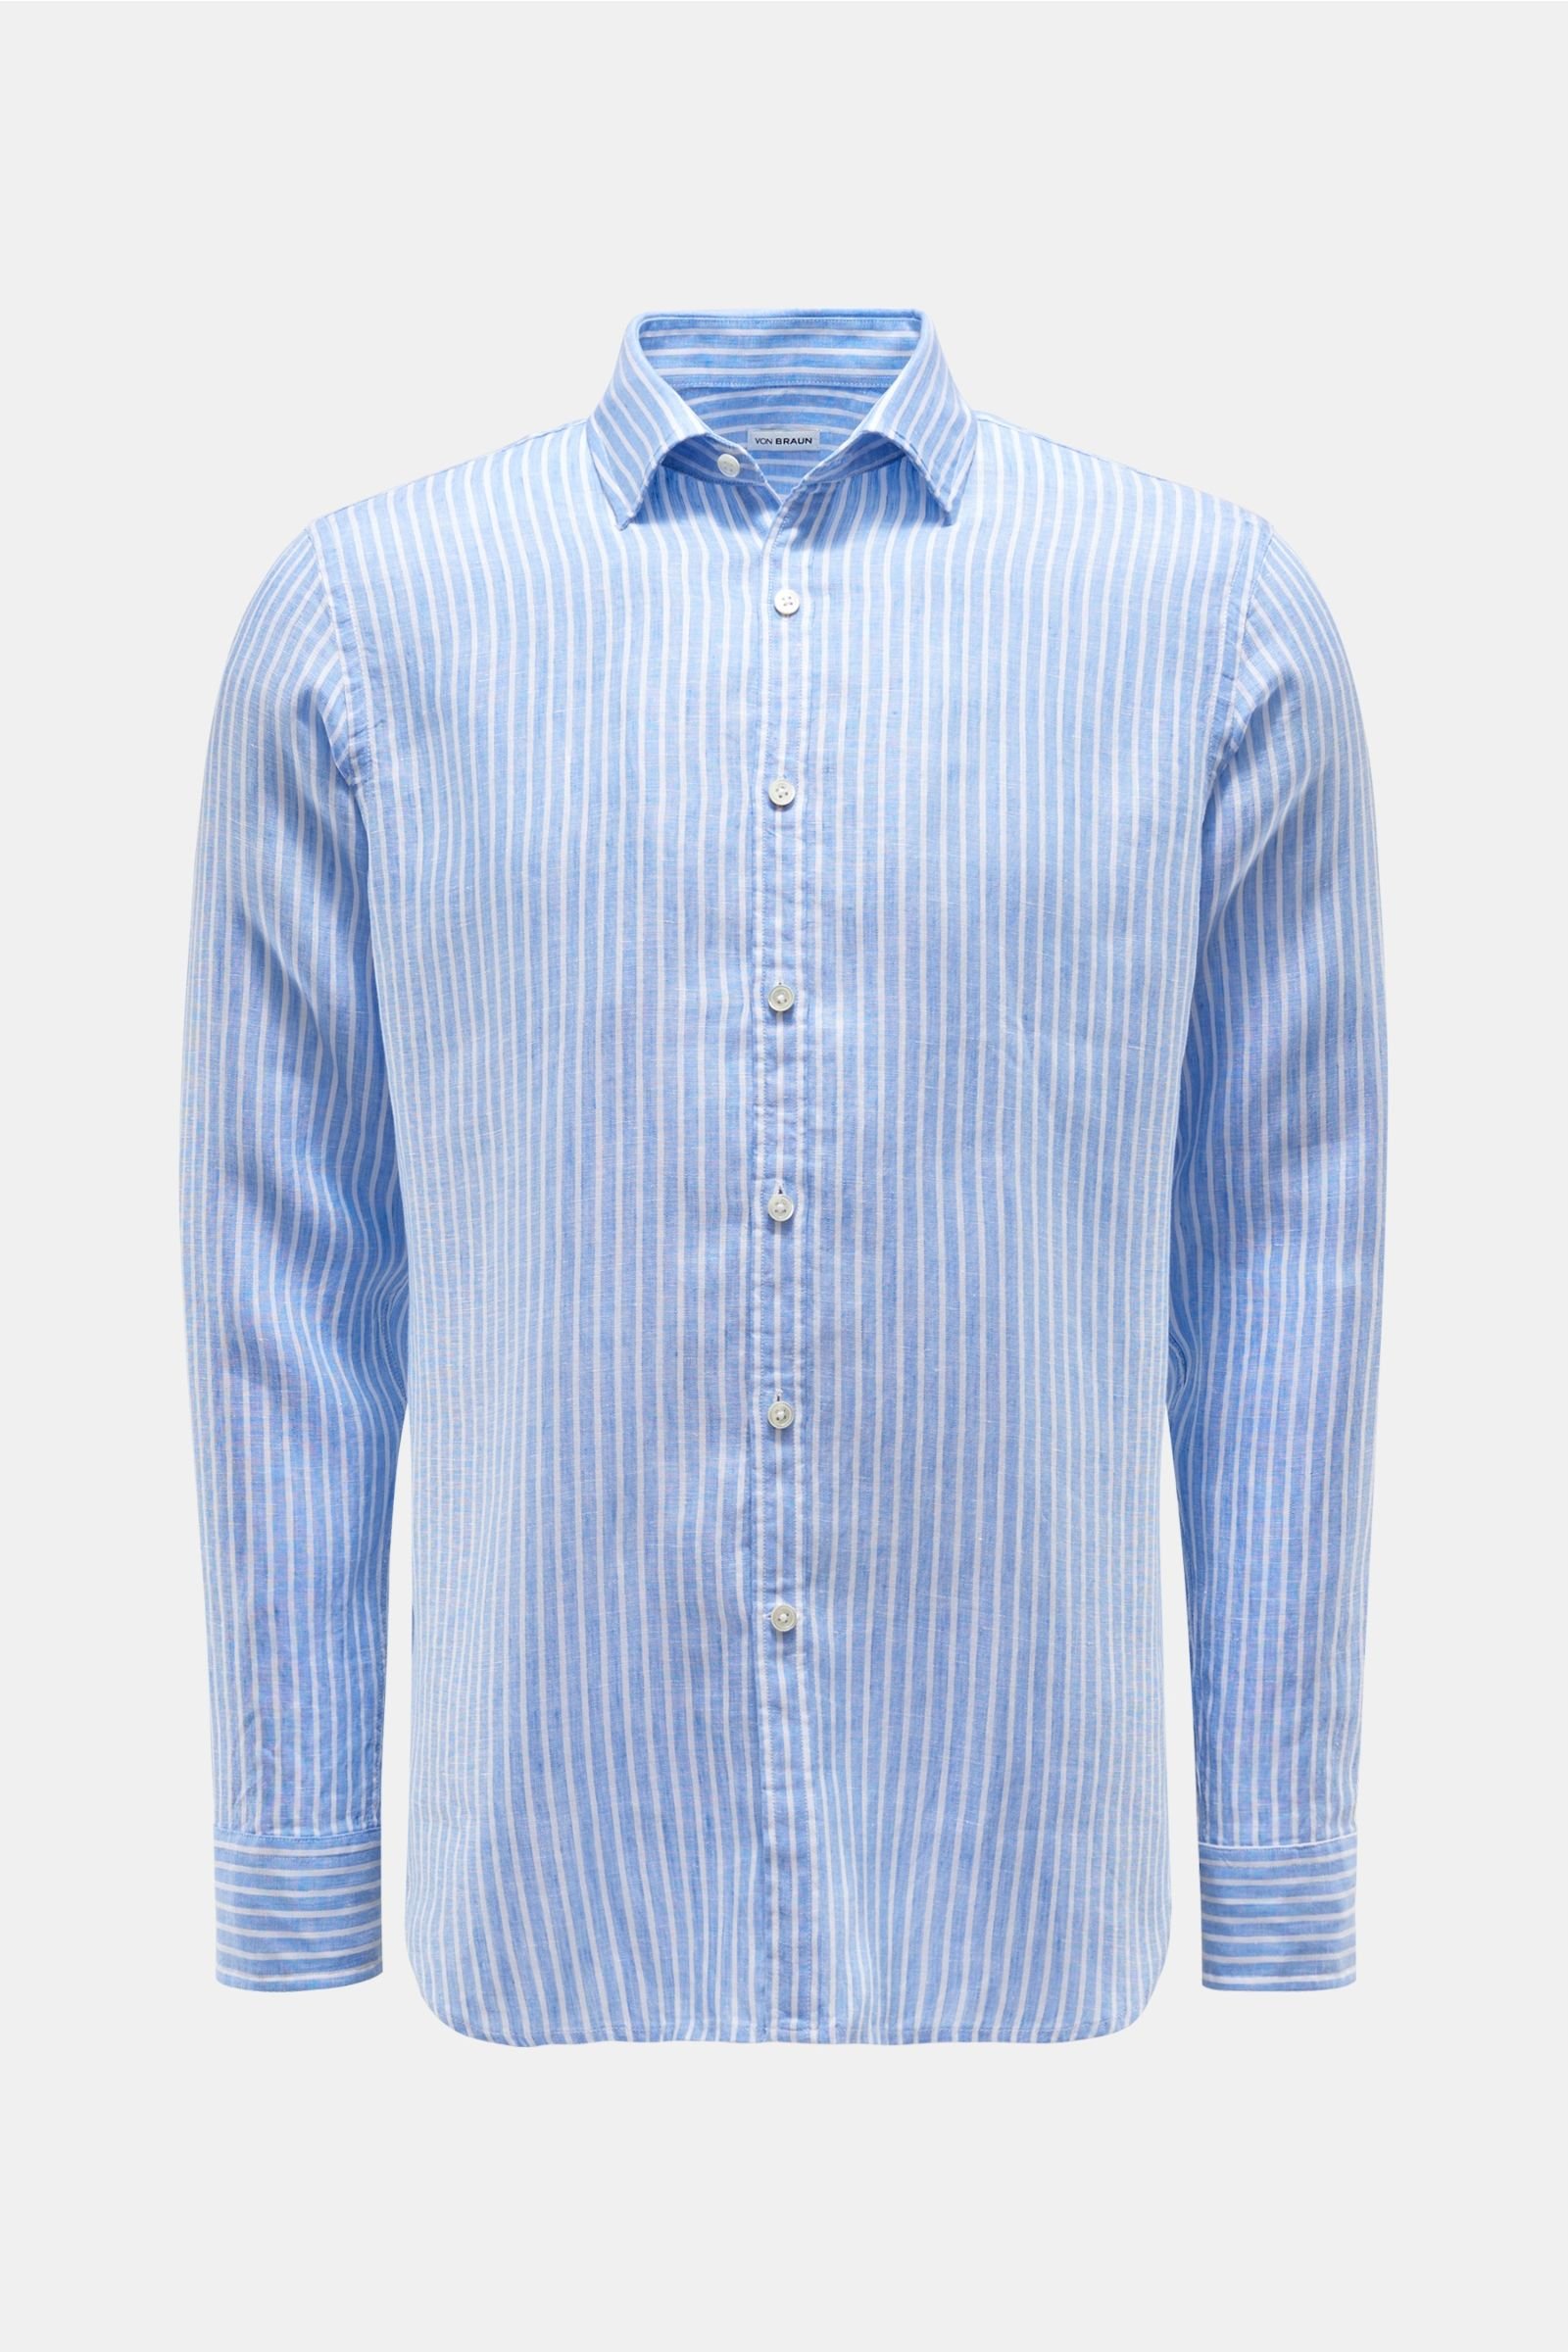 Linen shirt Kent collar light blue/white striped